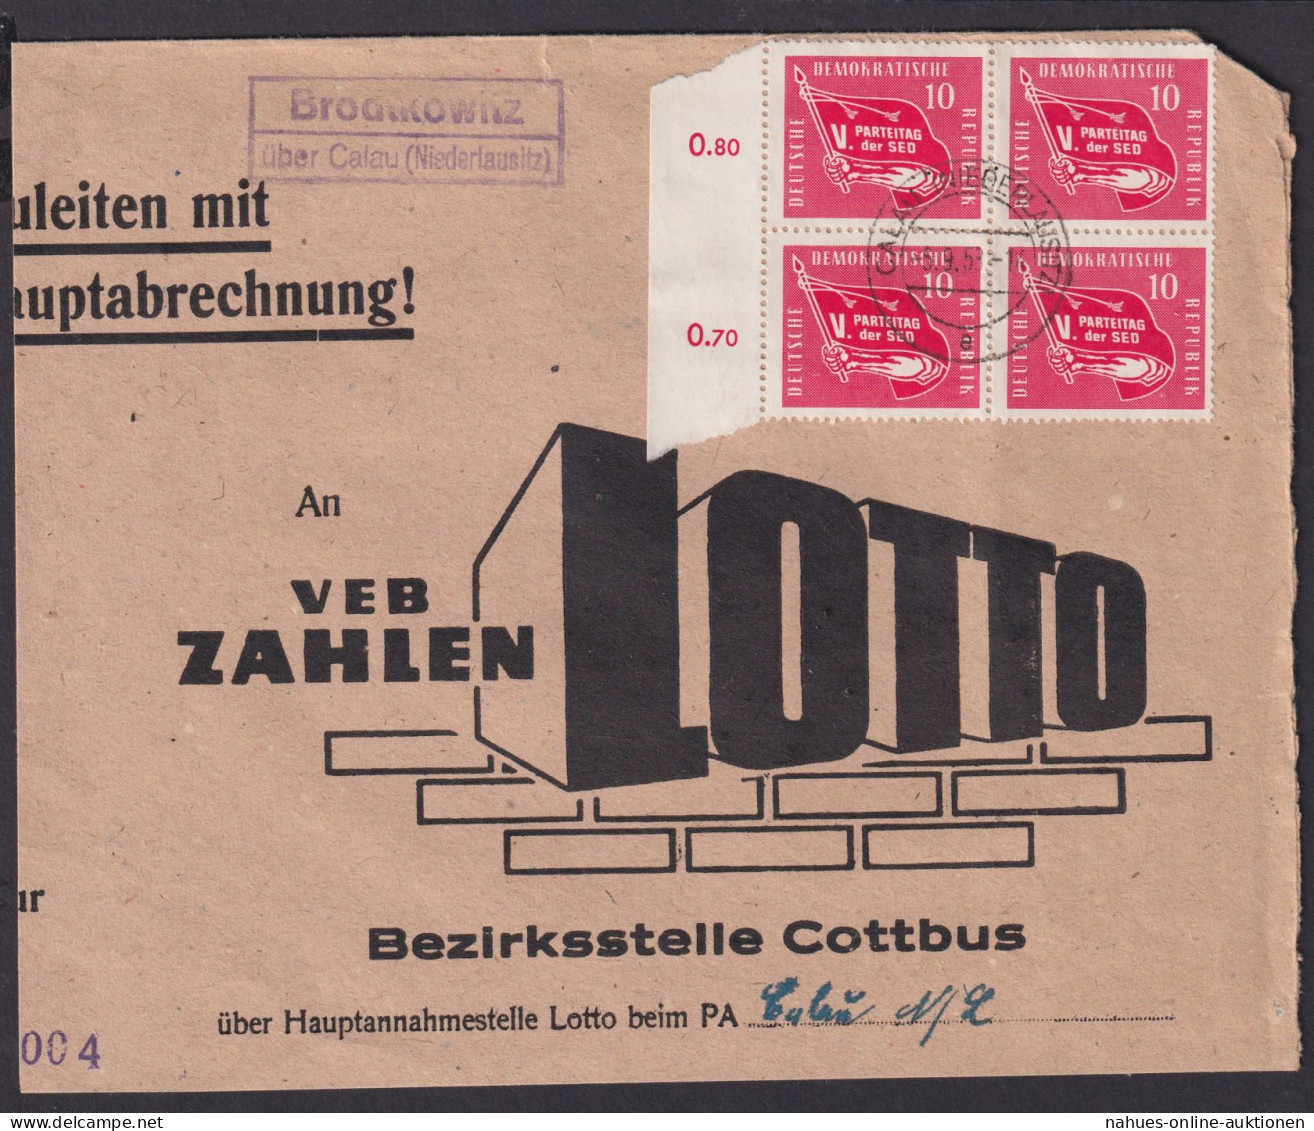 Brodtkowitz über Calau Niederlausitz Brandenburg DDR Brief Landpoststempel - Cartas & Documentos